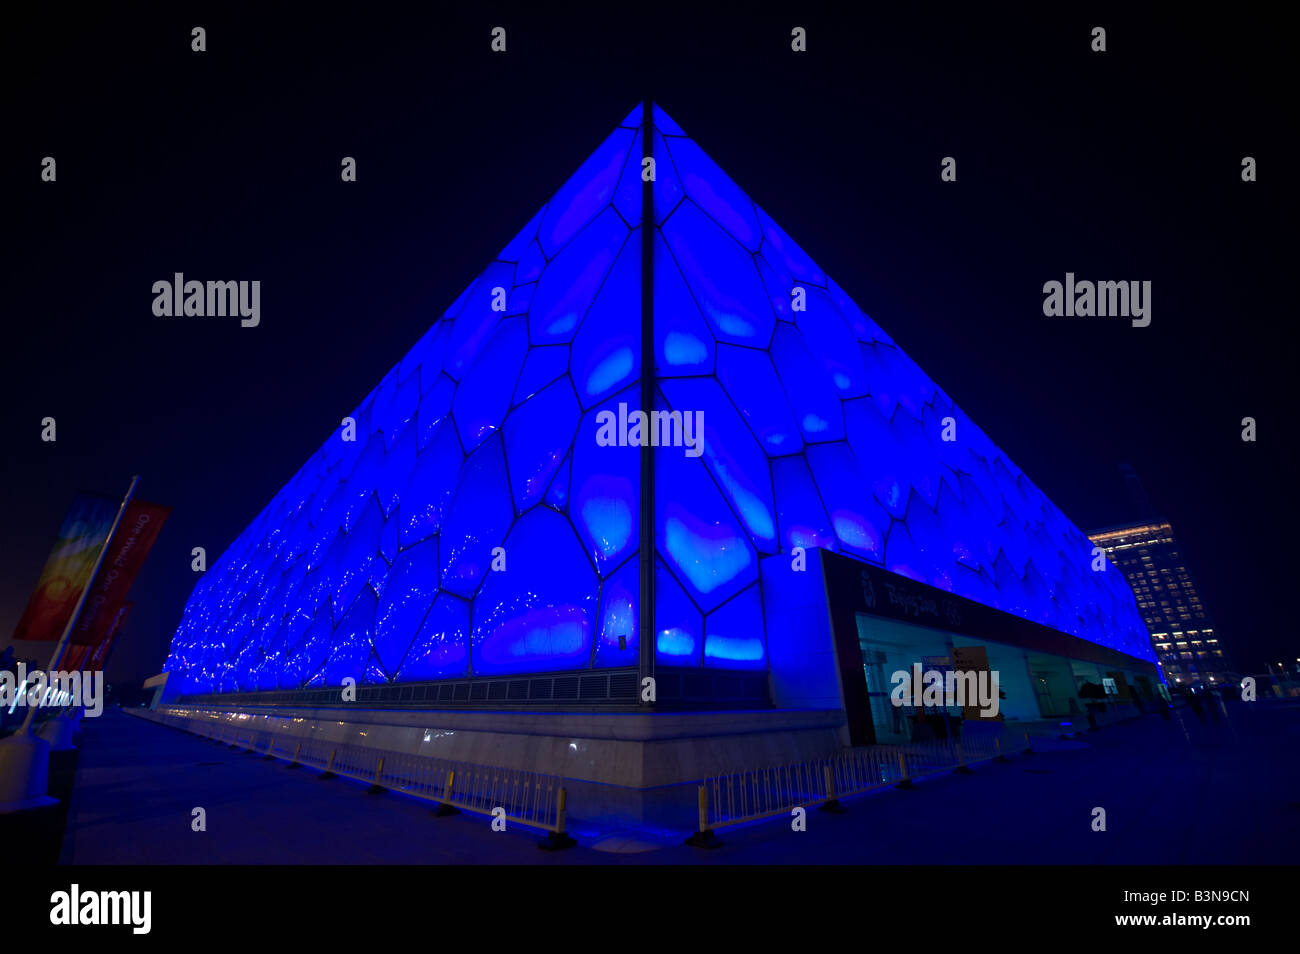 Beijing National Aquatics Centre, conosciuto anche come Water Cube, durante i Giochi Olimpici di Pechino 2008 blu illuminata di notte Foto Stock